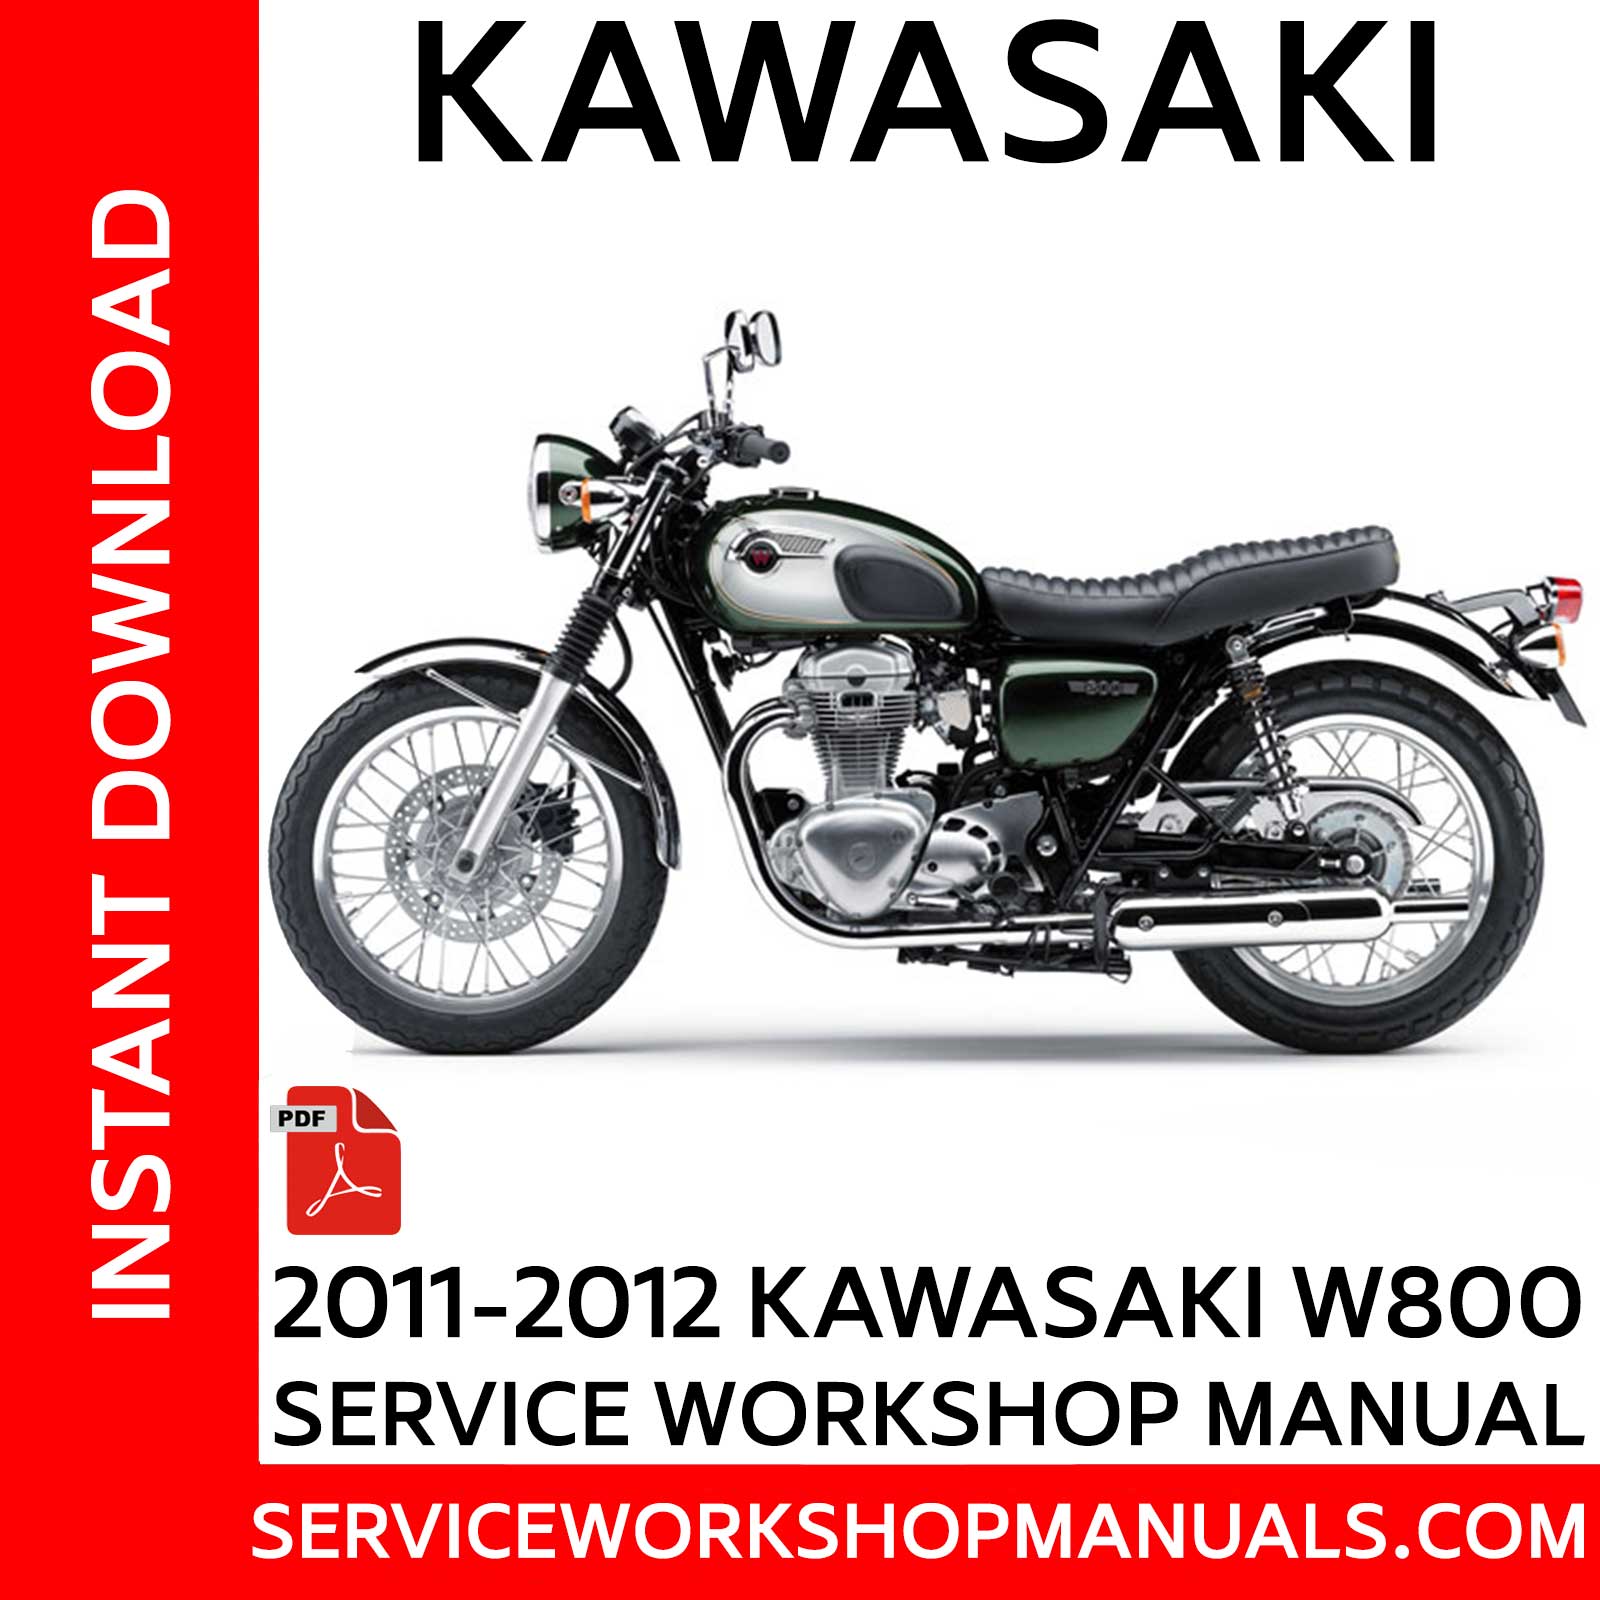 maskine træ aktivitet Kawasaki W800 2011-2012 Service Workshop Manual - Service Workshop Manuals